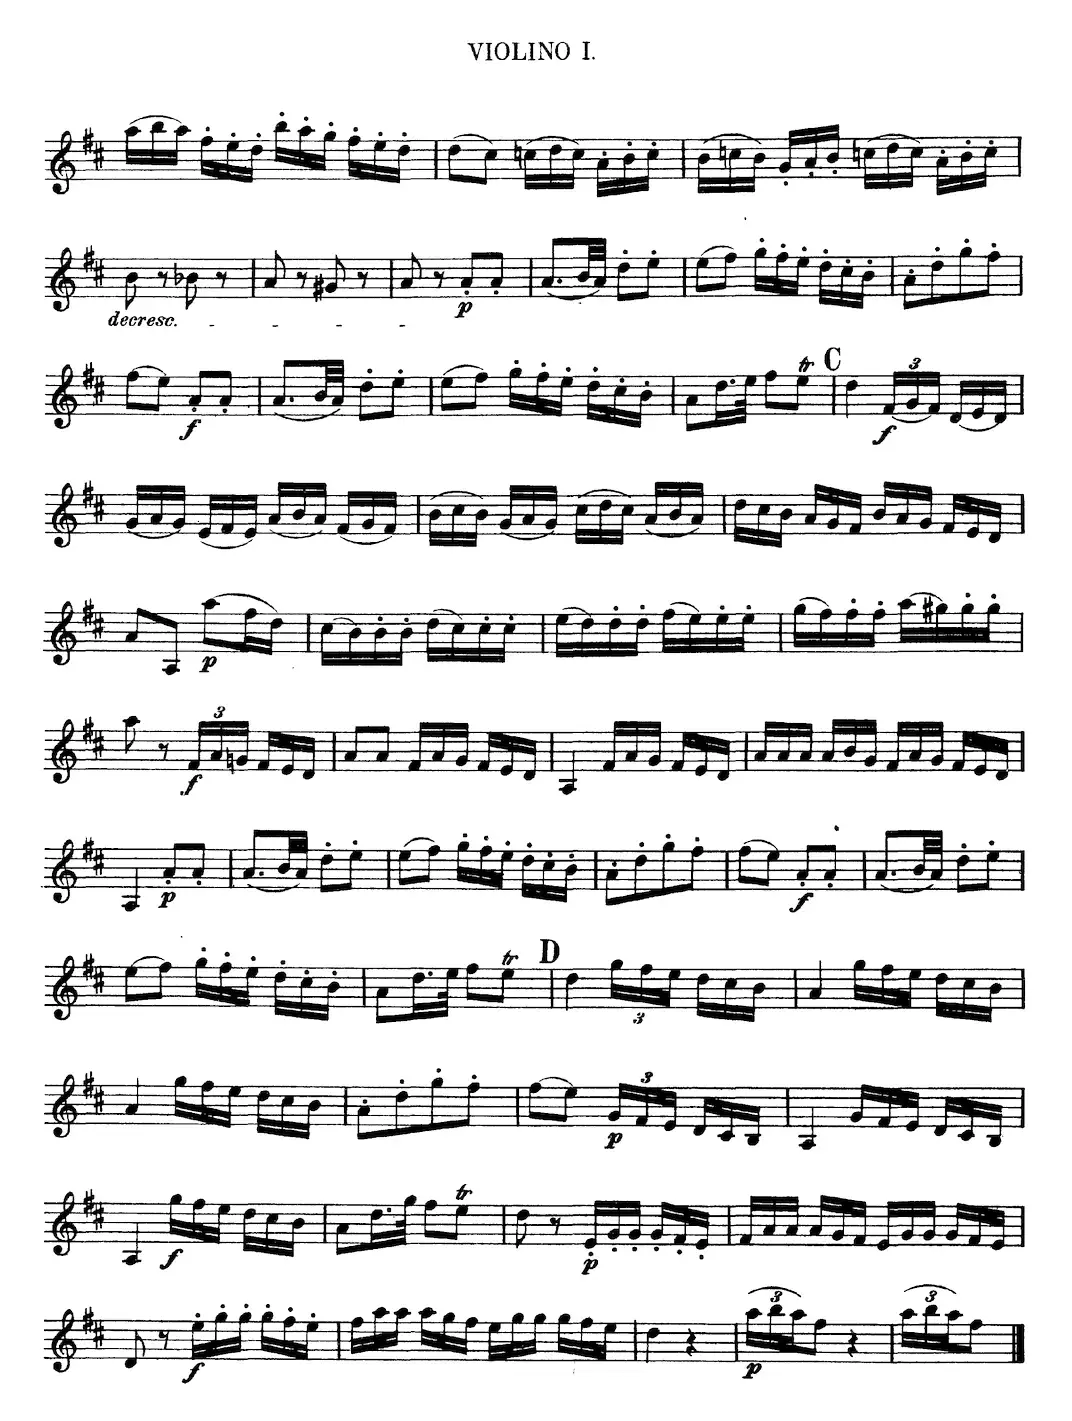 Mozart《Quartet No.13 in D Minor,K.173》（Violin 1分谱）